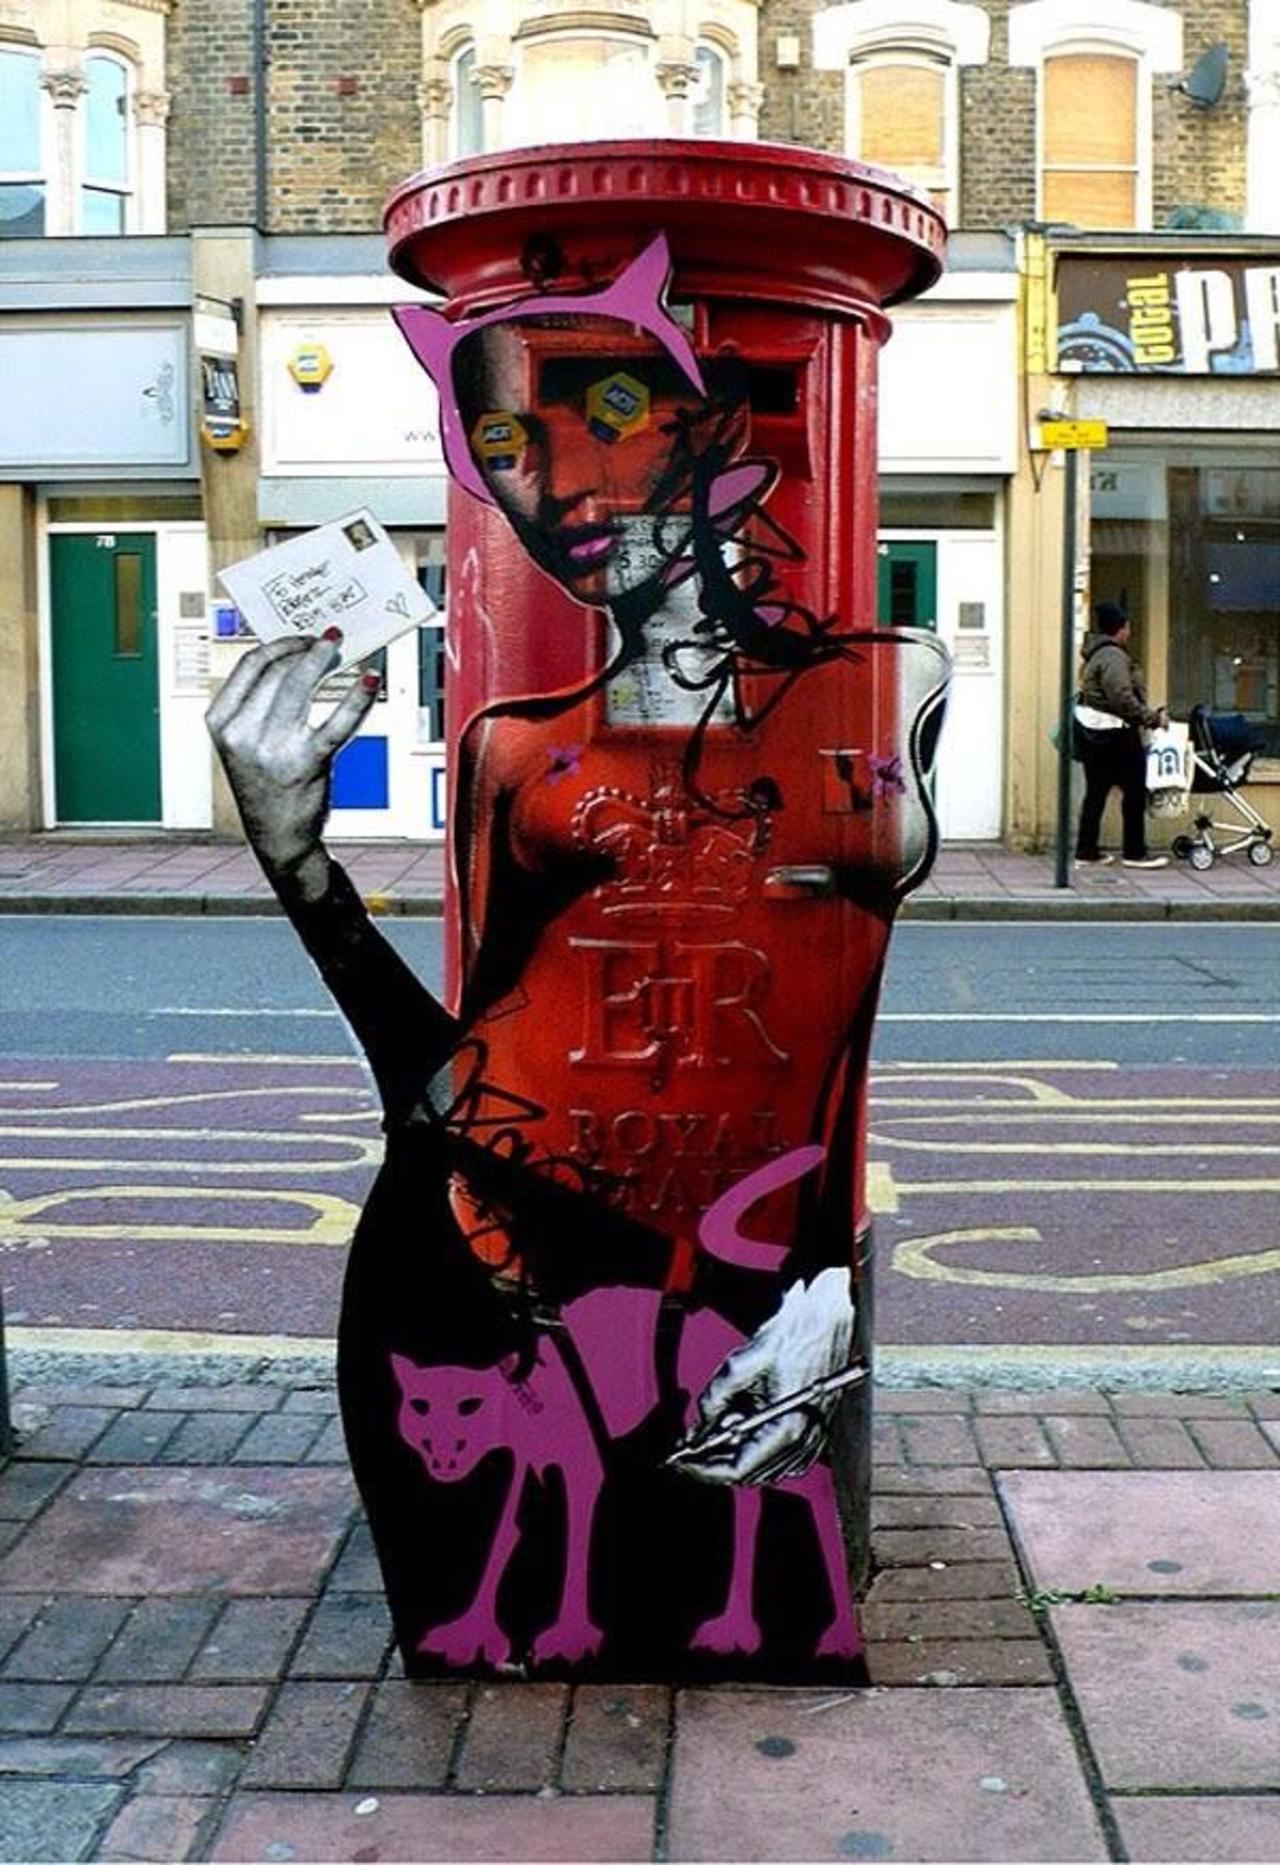 Artist Miss Bugs very clever Street Art piece in London, UK #art #graffiti #streetart http://t.co/4TyqMve0gs